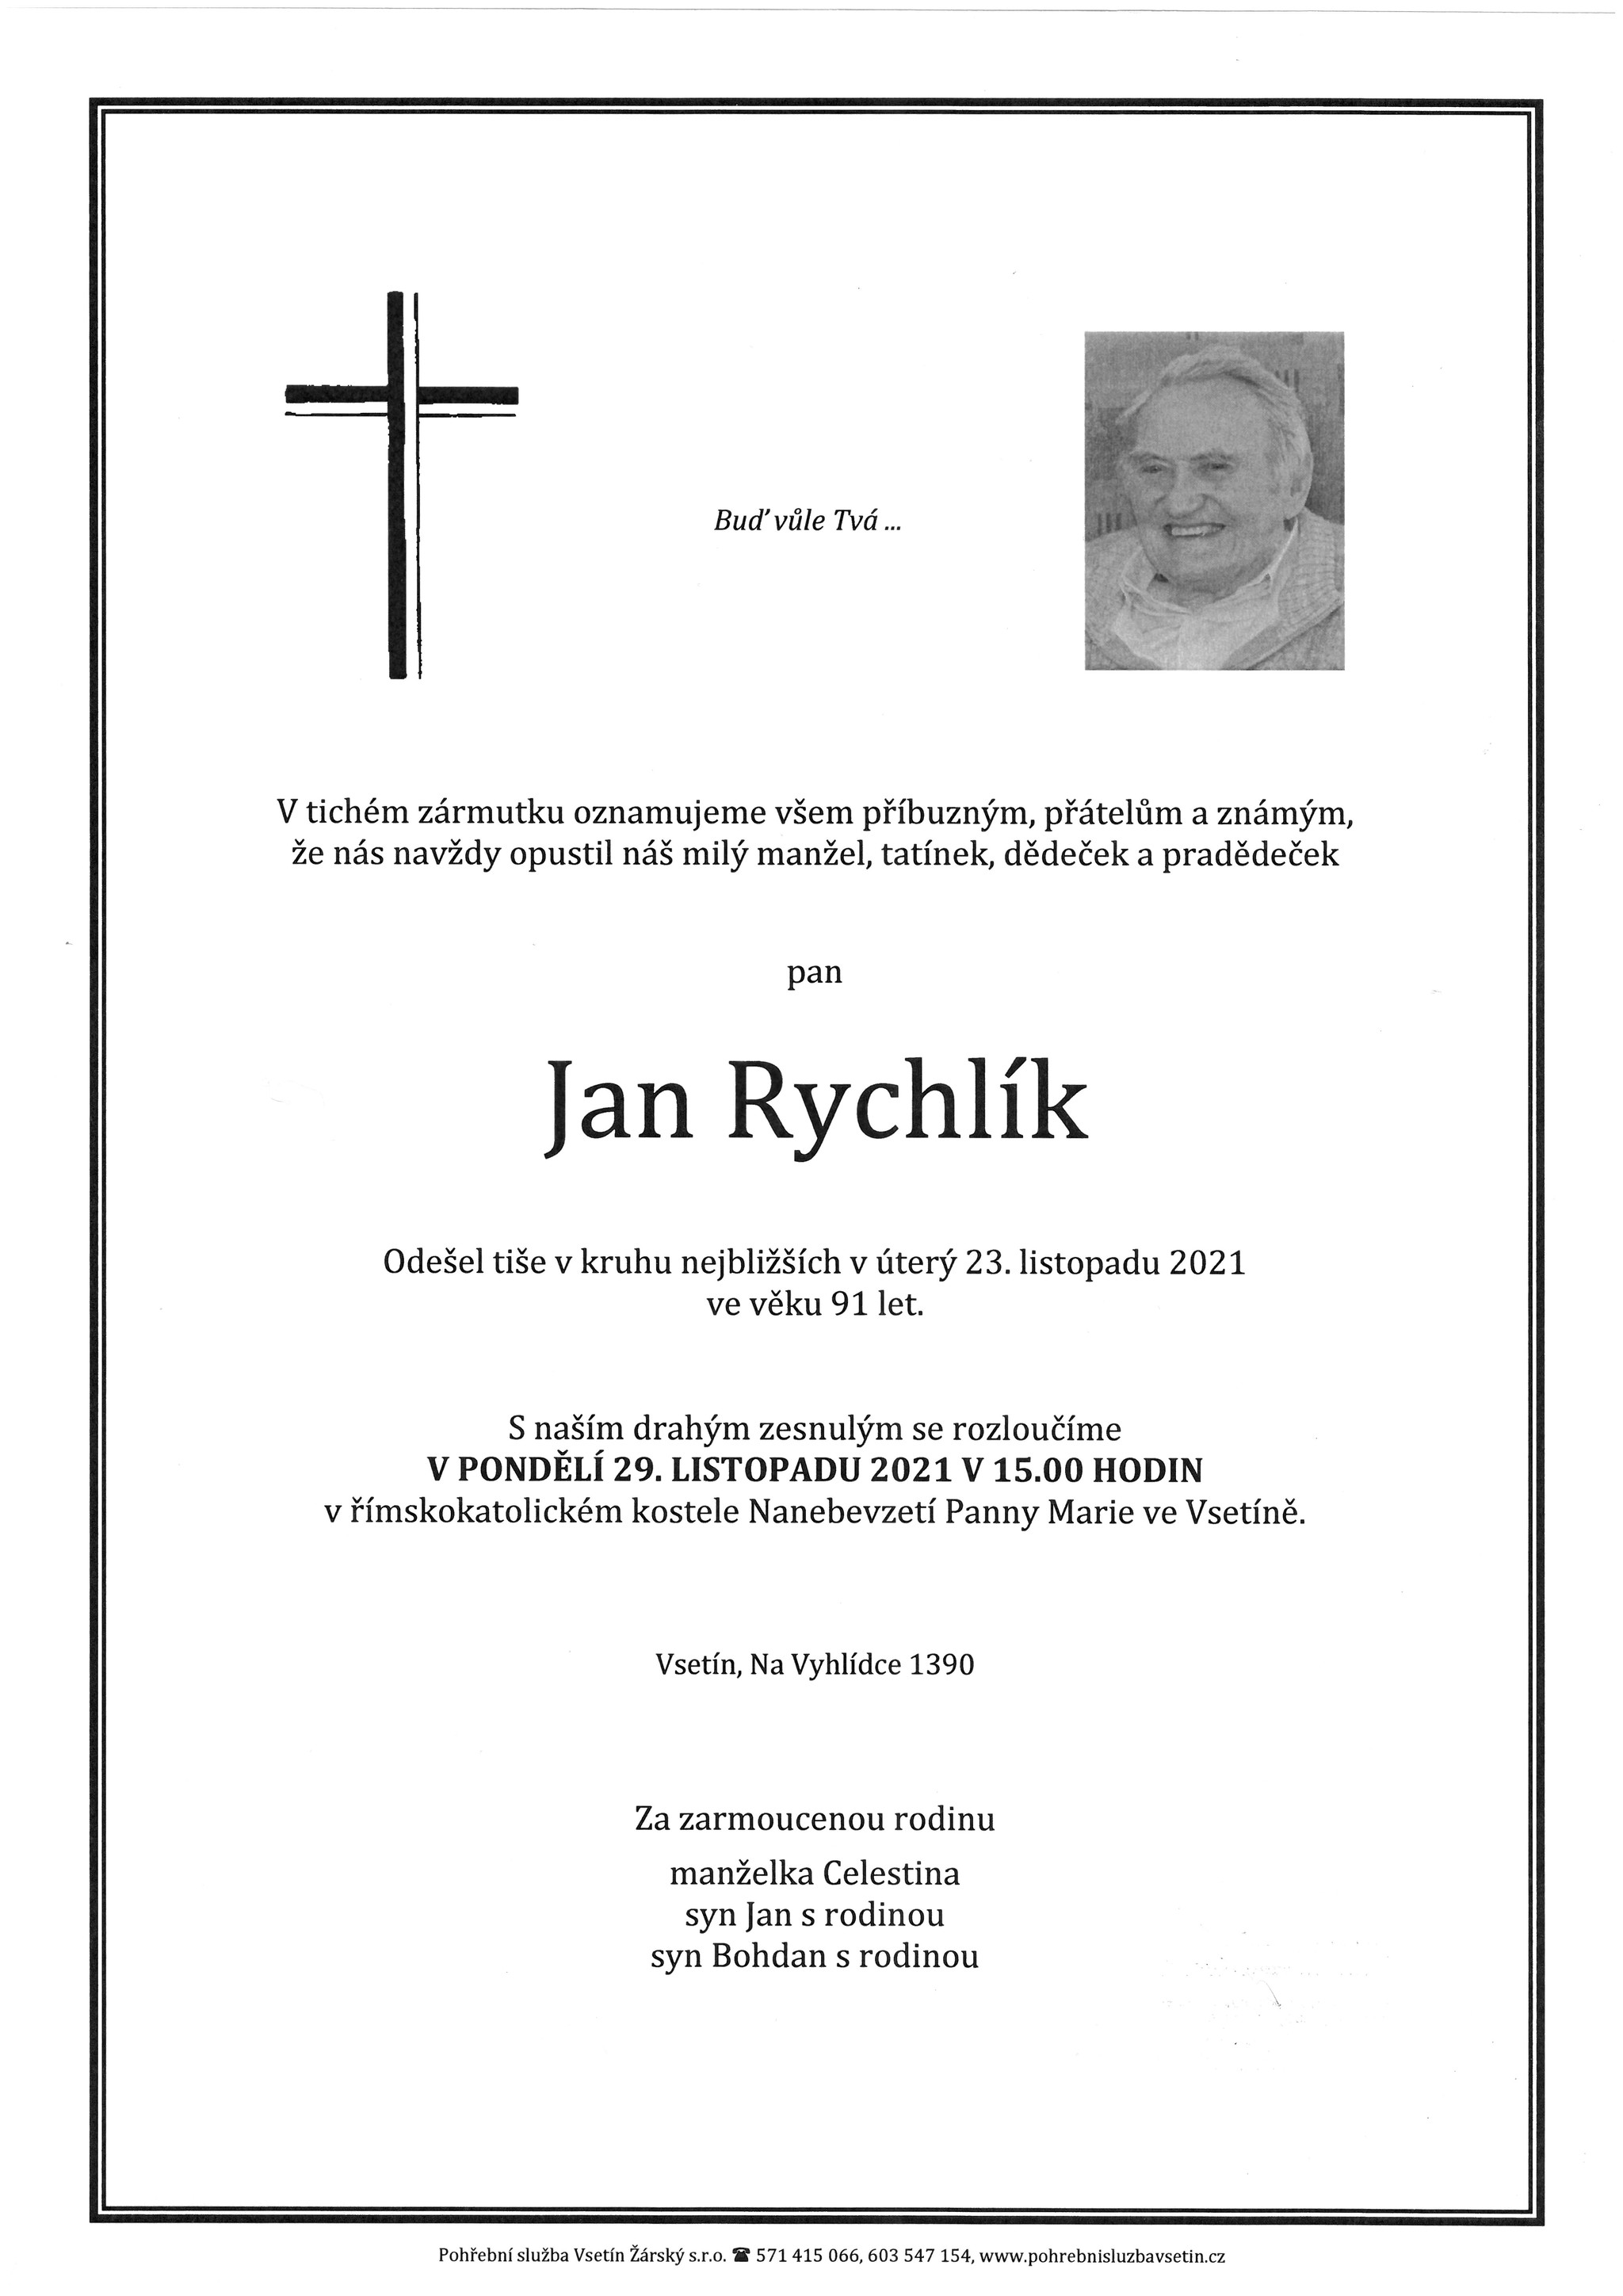 Jan Rychlík